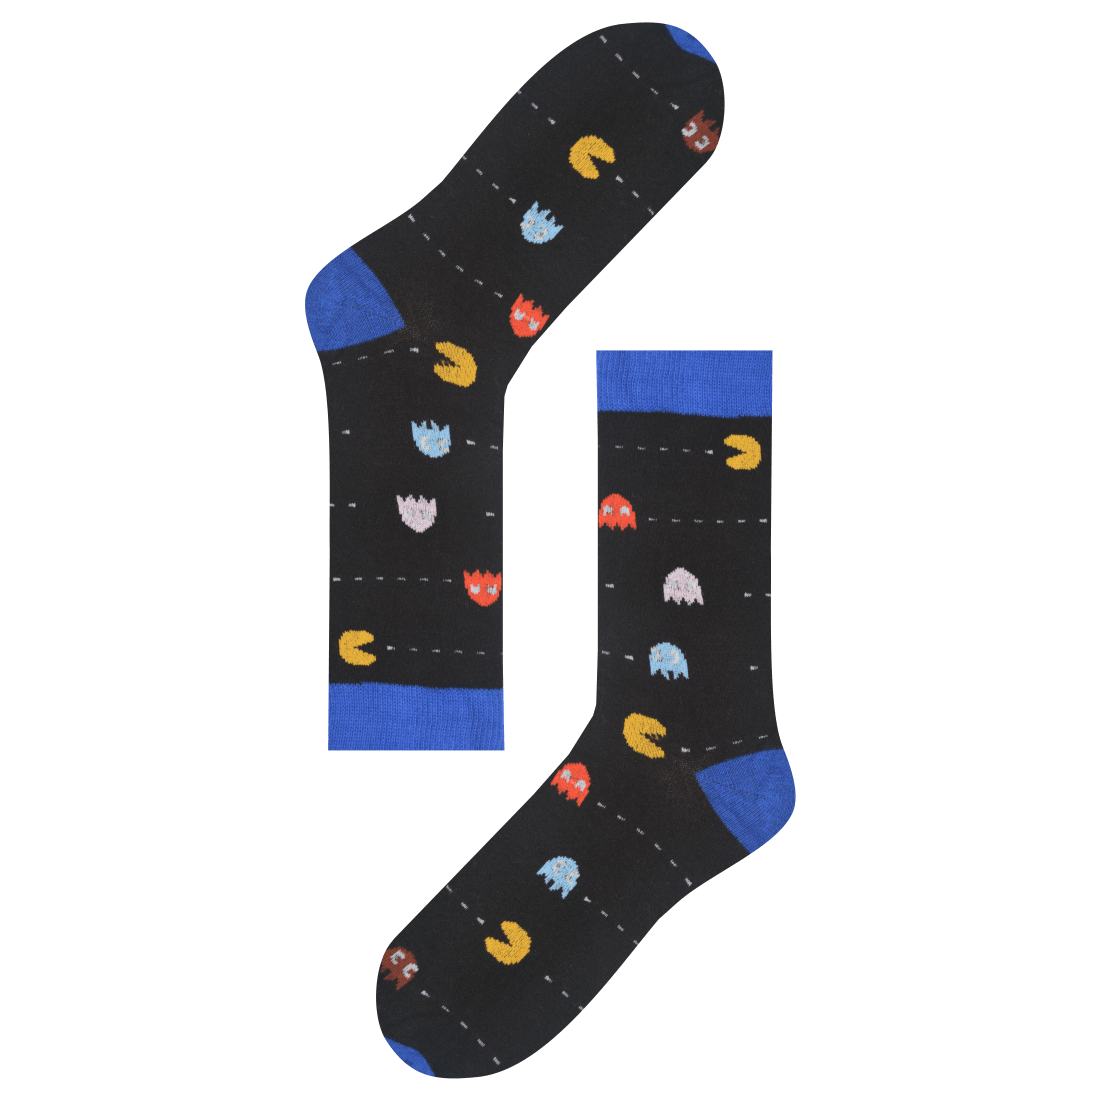 Medias Locas calcetines divertidos de diseño de Pacman Freaky Socks